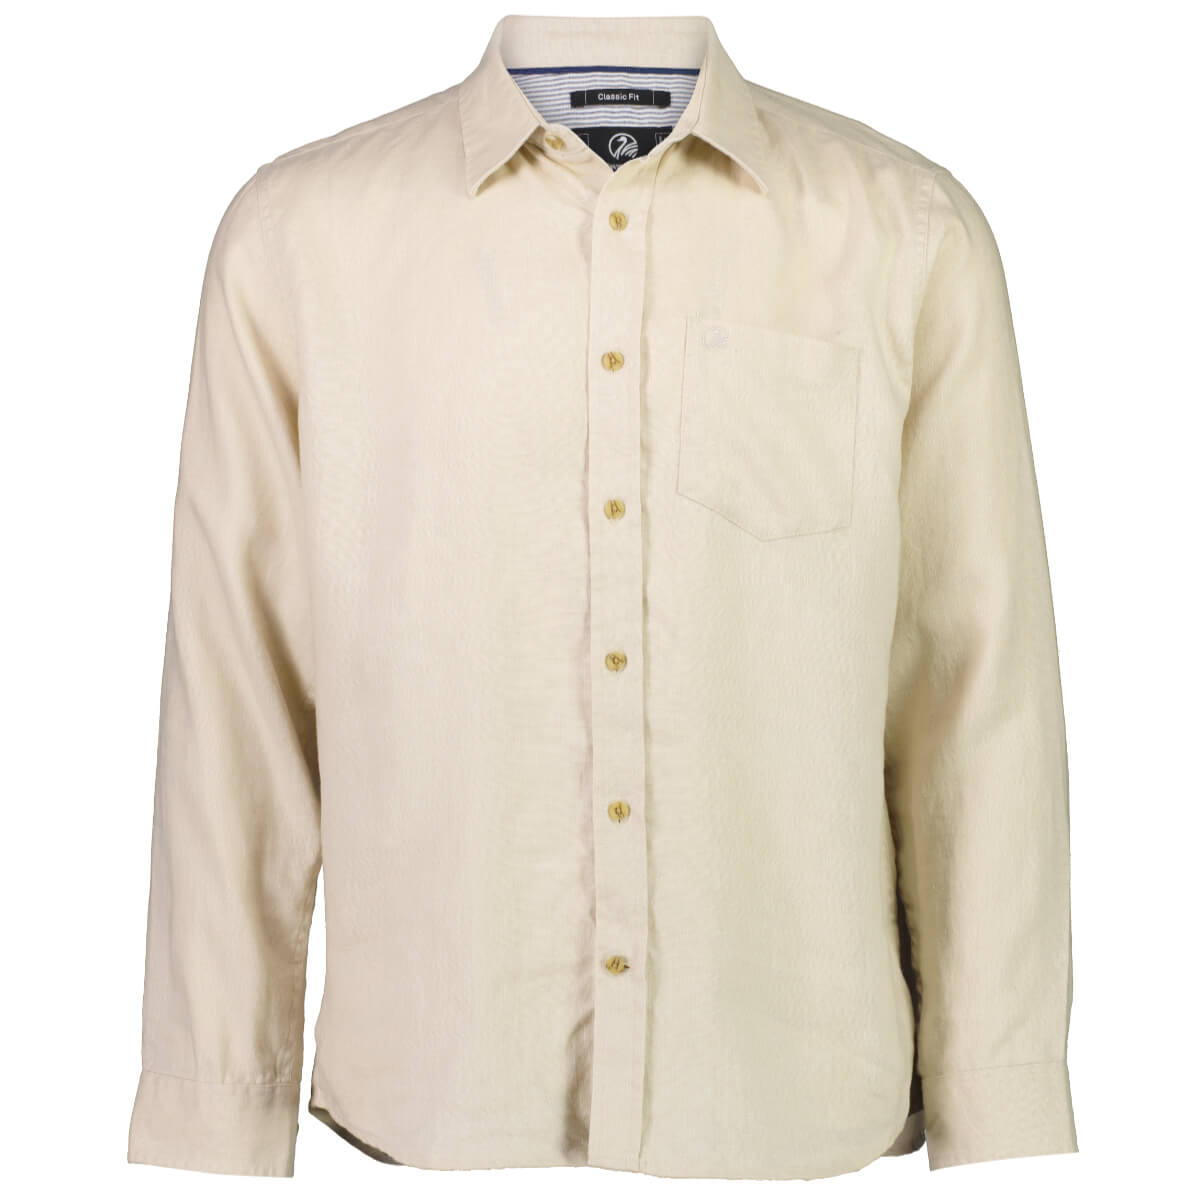 Swanndri Men's Nolan Long Sleeve Linen Shirt